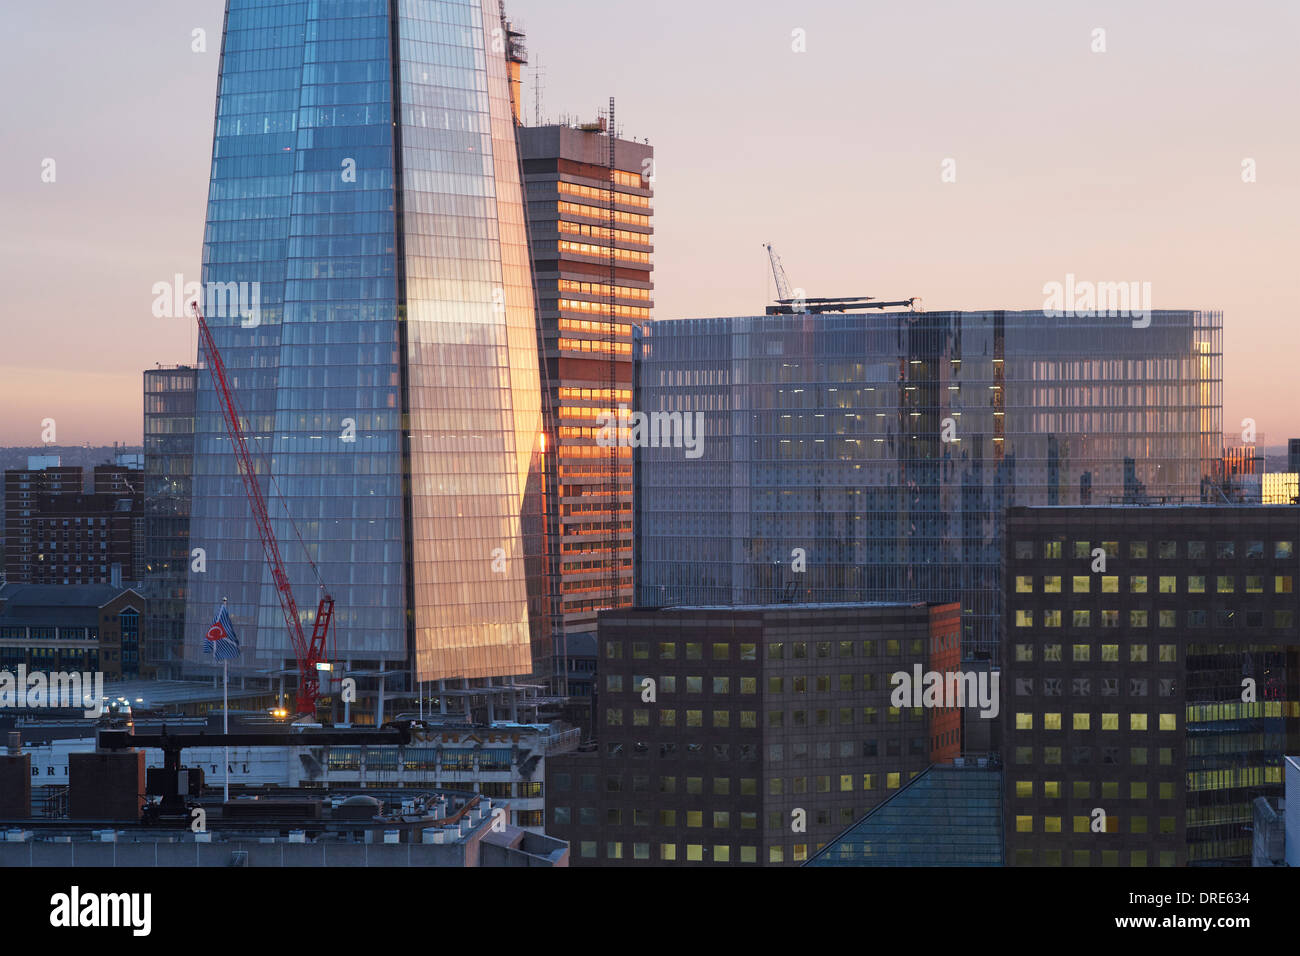 Der Shard, London, Vereinigtes Königreich. Architekt: Renzo Piano, 2012. Stockfoto